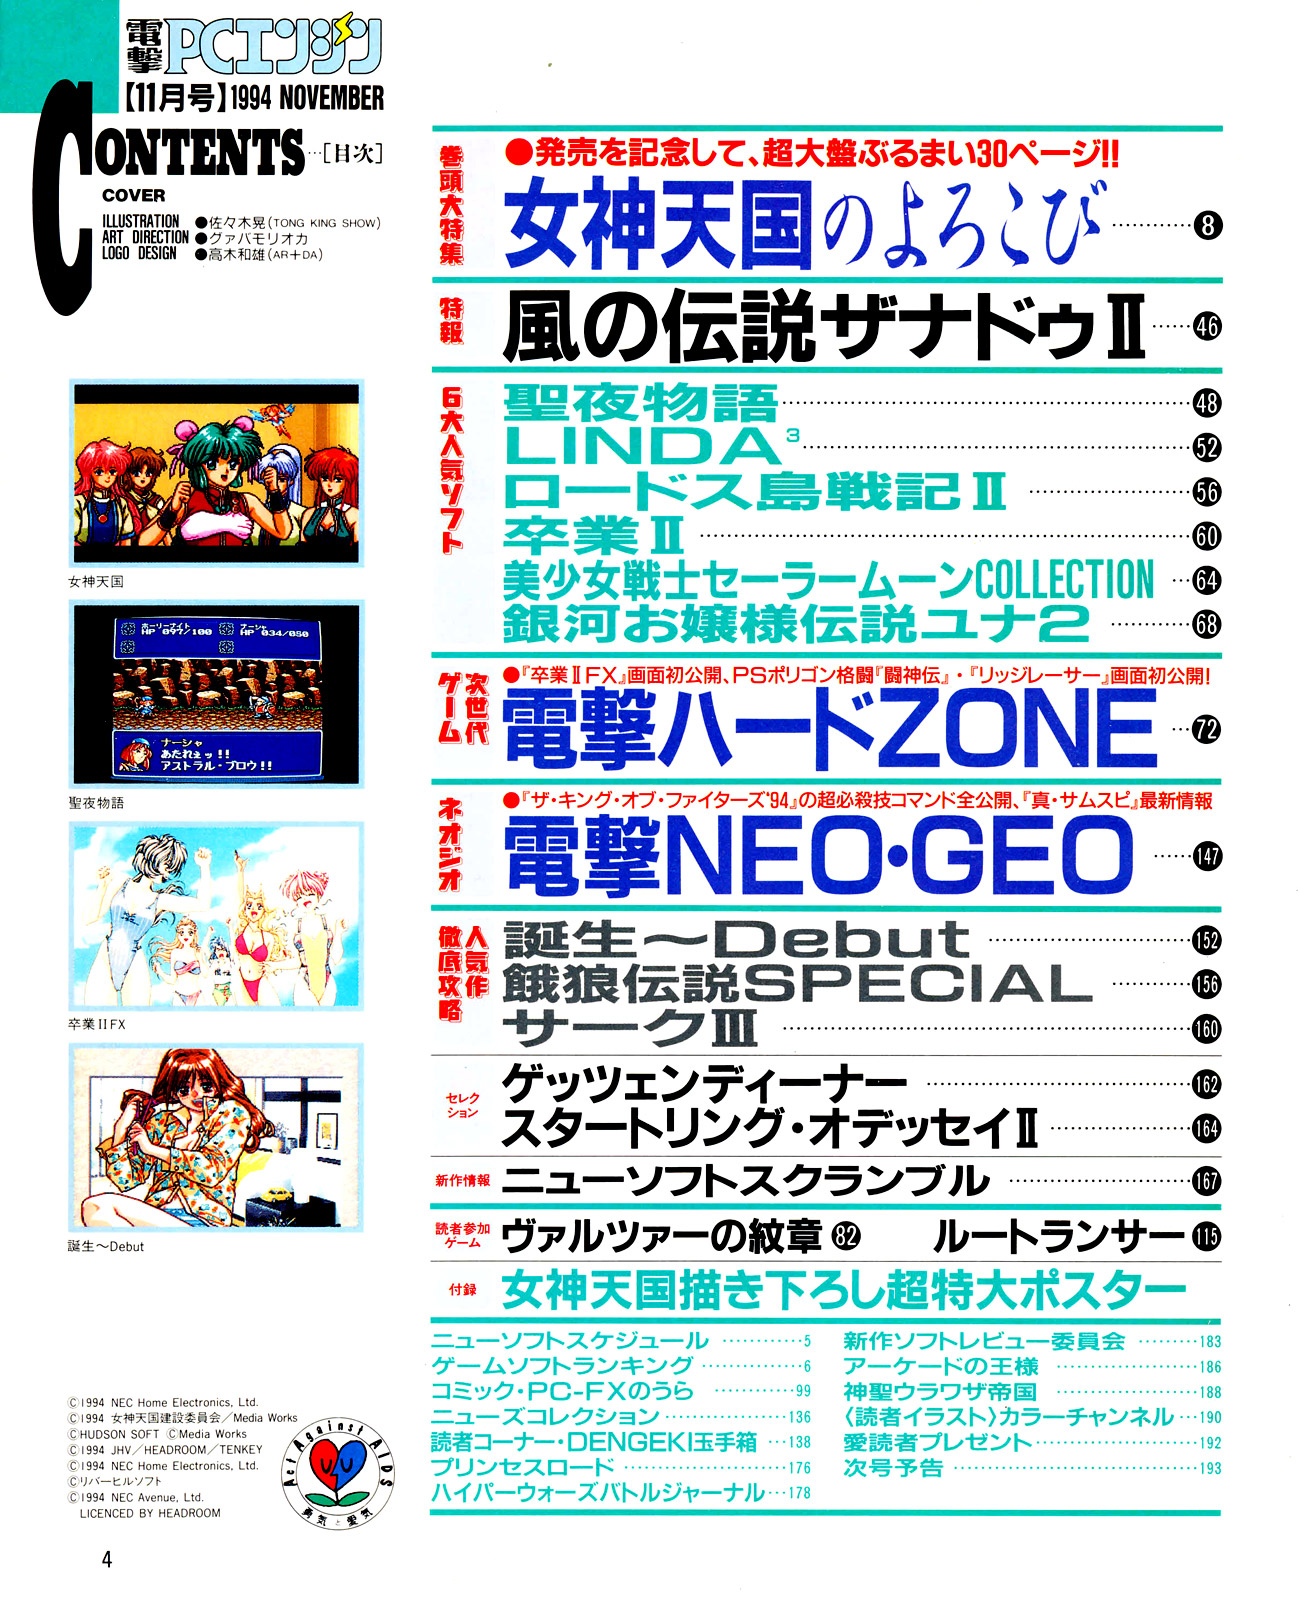 Dengeki Pc Engine 11 November 1994 Turboplay Magazine Archives